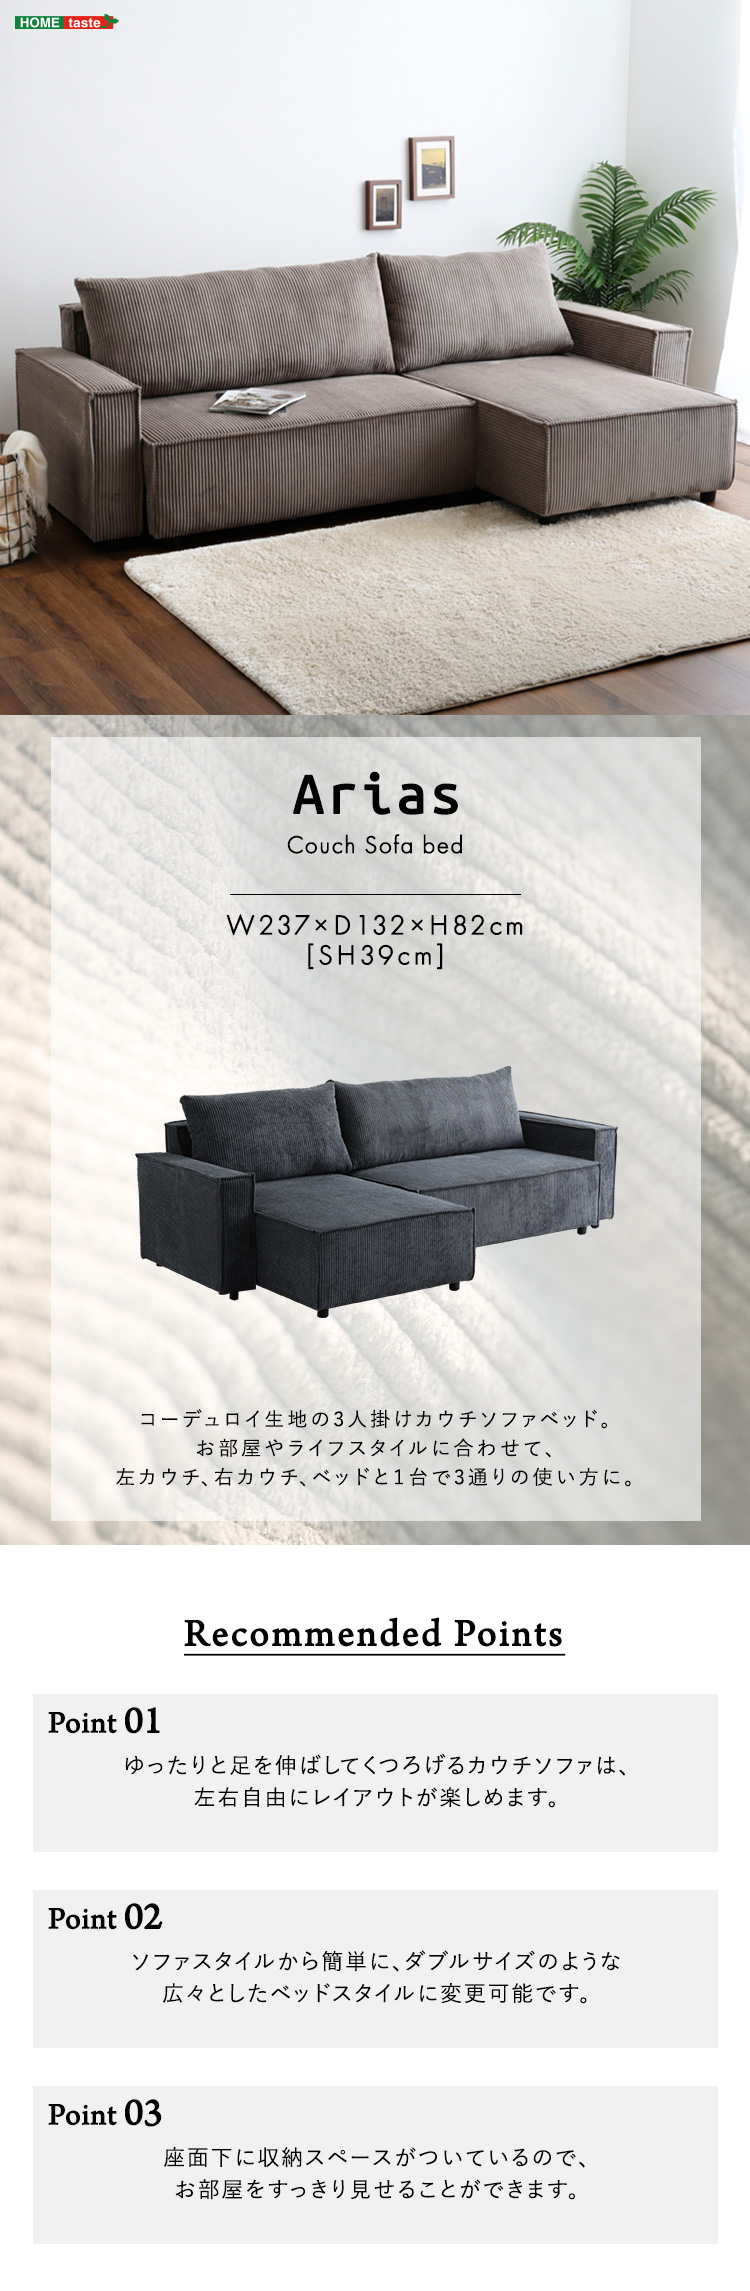 コーデュロイ生地の3人掛けカウチソファベッド 【Arias】アリアス| 北欧の家具通販店Sotao